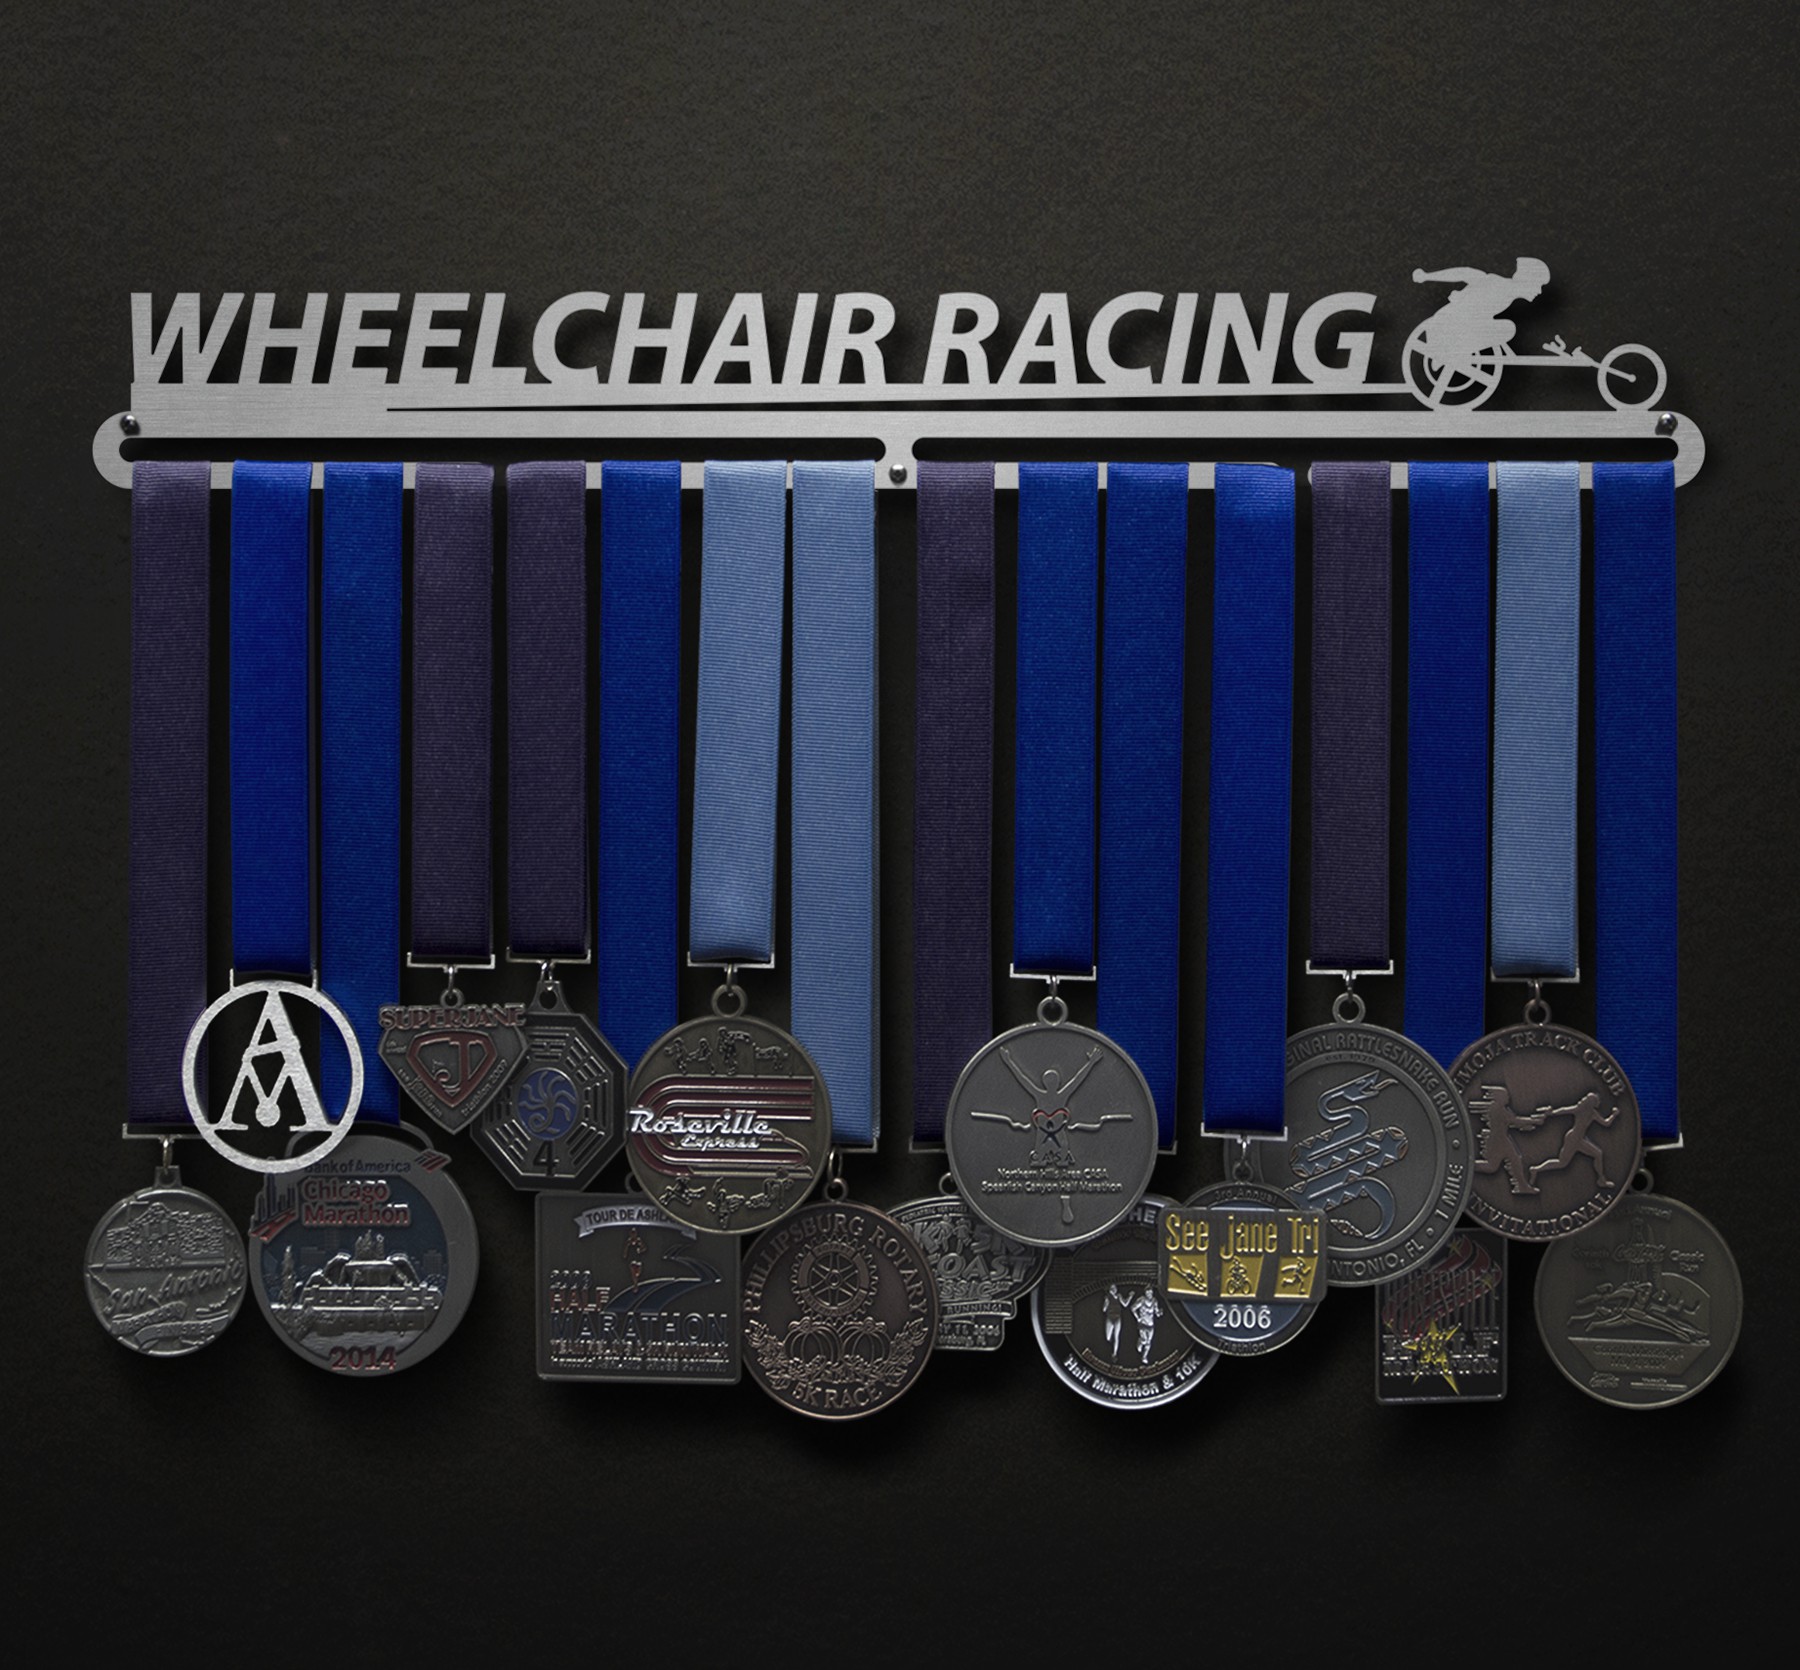 Wheelchair Racing - Male